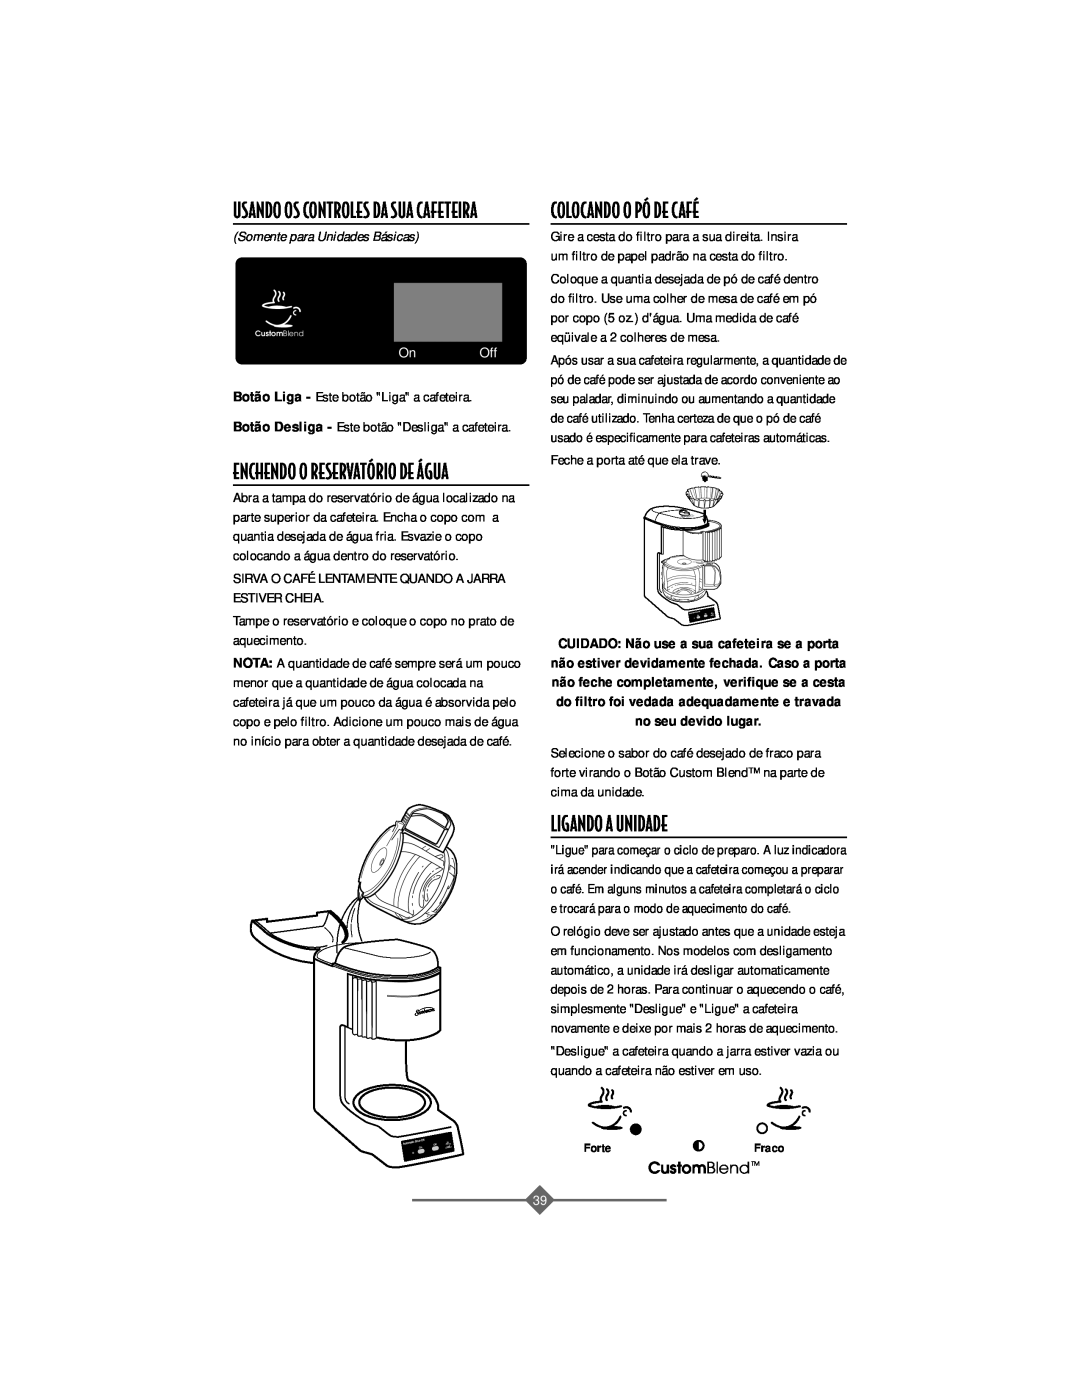 Sunbeam 32863281 instruction manual COLOCANDO O Pî DE CAFƒ, Ligando A Unidade, Somente para Unidades Básicas 